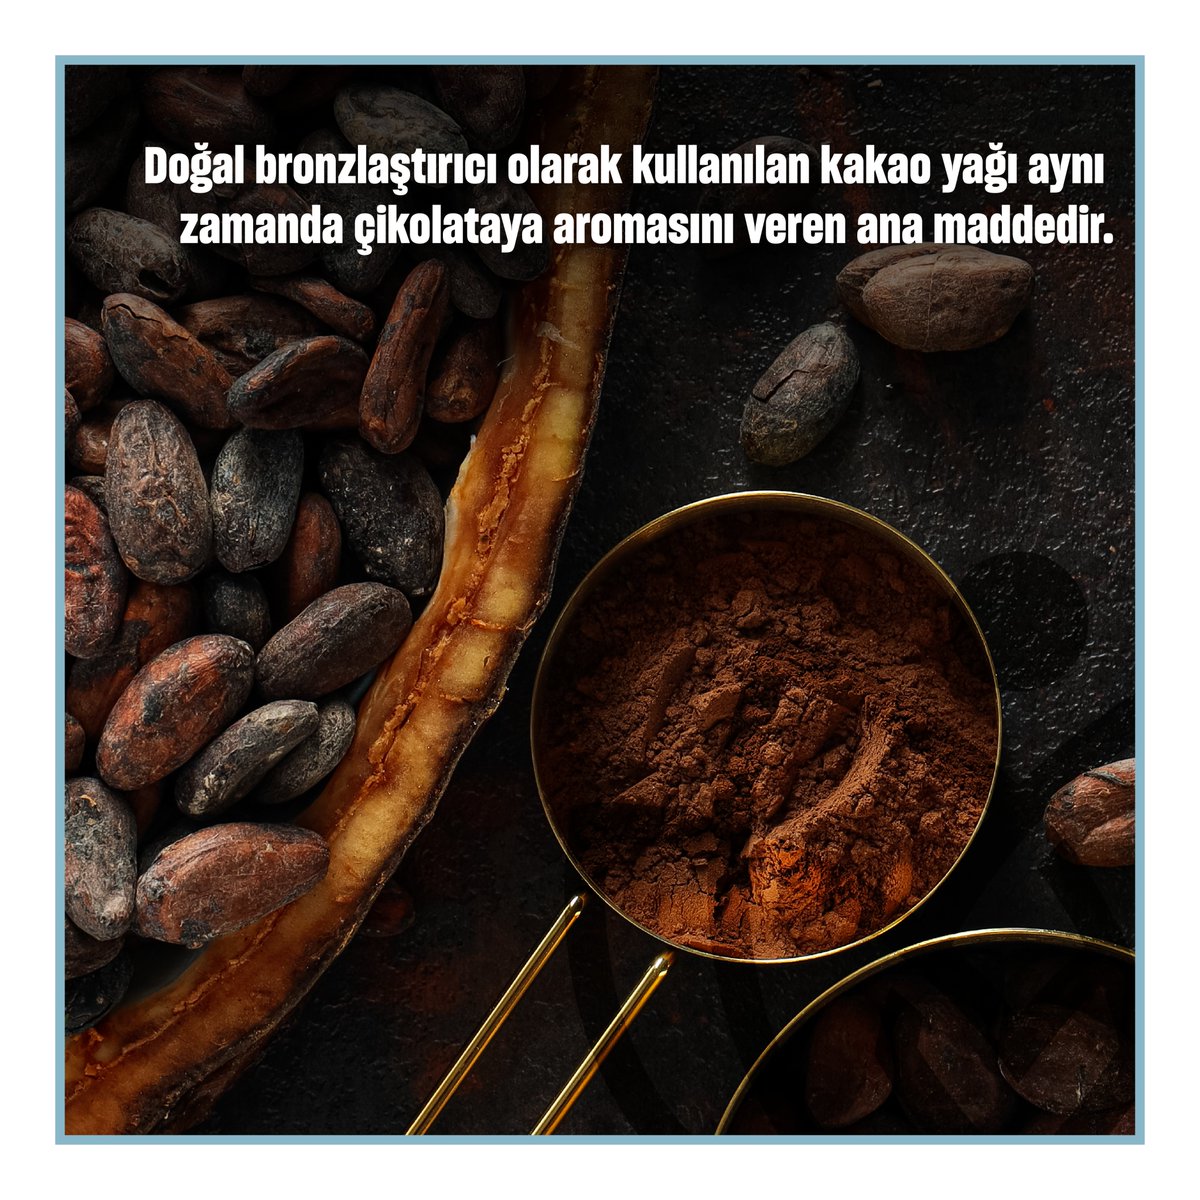 Yaz ürünlerinin içeriğinde gördüğümüz kakao yağı hakkında daha fazla bilgi için sola kaydırın.

#newrawmaterials #talya #rawmaterials #hammadde #uçucuyağlar #sabityağlar #fitoterapi #kakaoyağı #buhardistilasyonu #soğuksıkım #aromaterapi #bitki #kozmetikhammadde #doğalyağlar